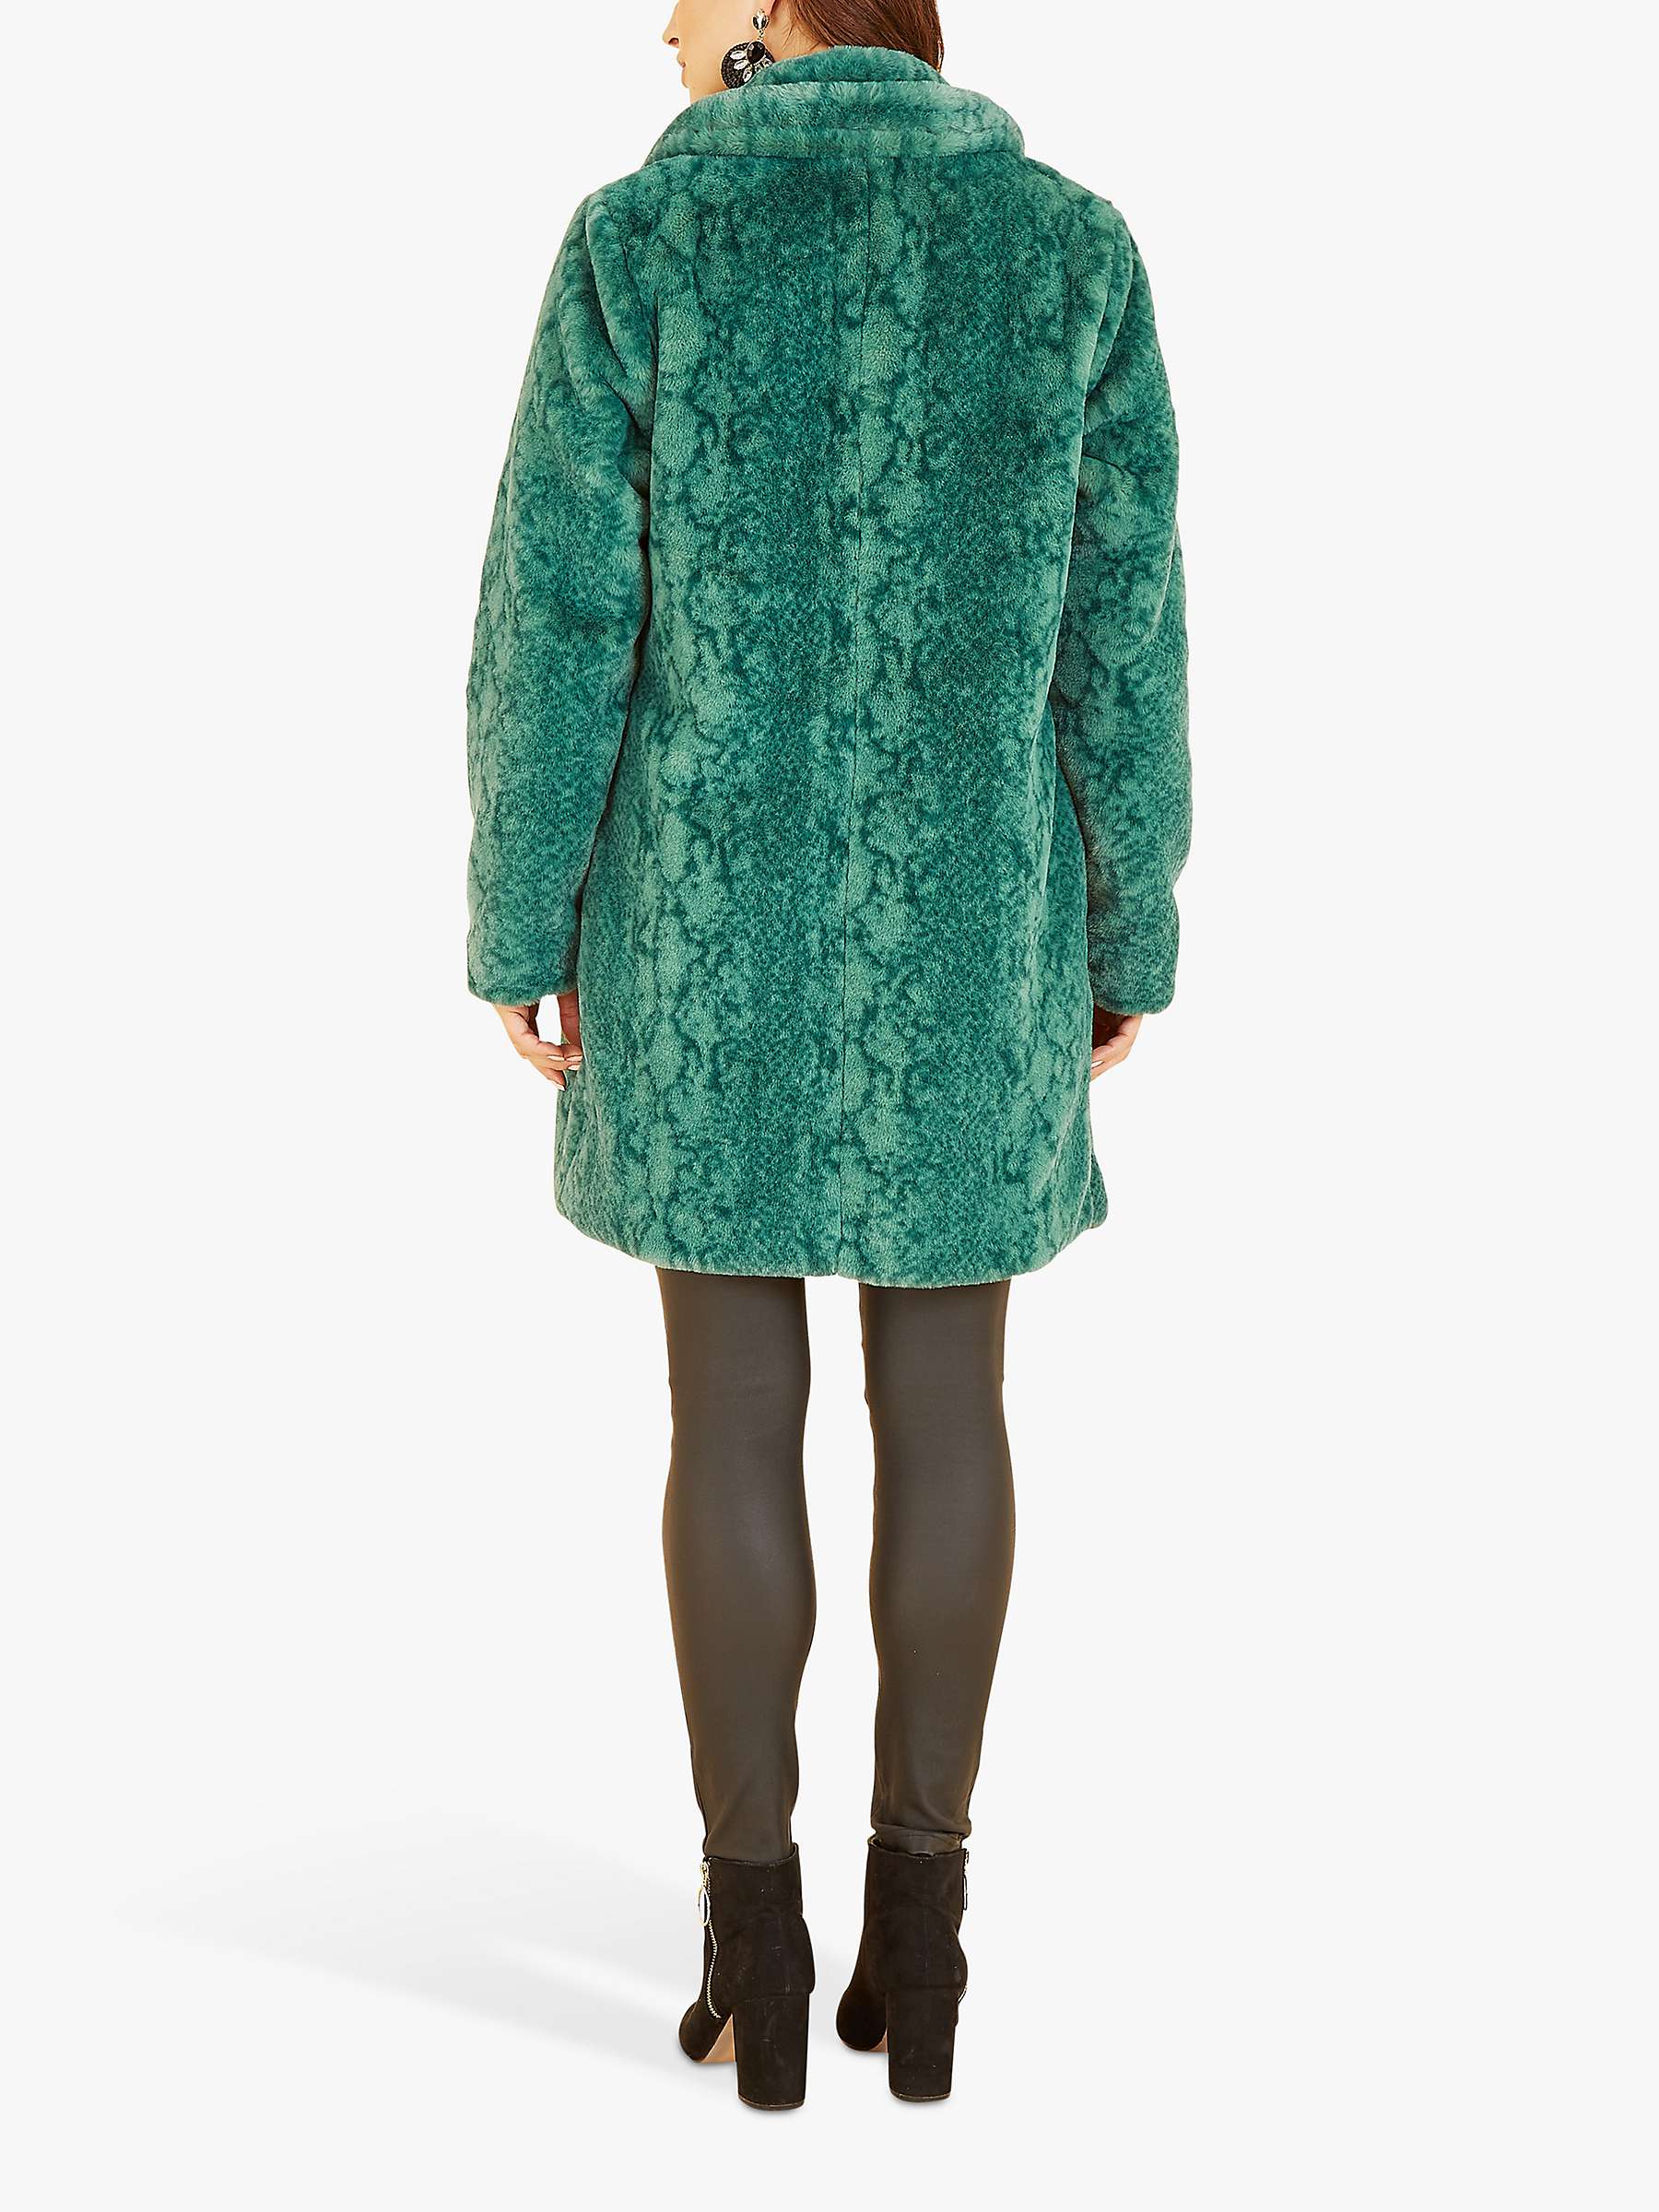 Buy Yumi Snakeskin Print Faux Fur Coat Online at johnlewis.com